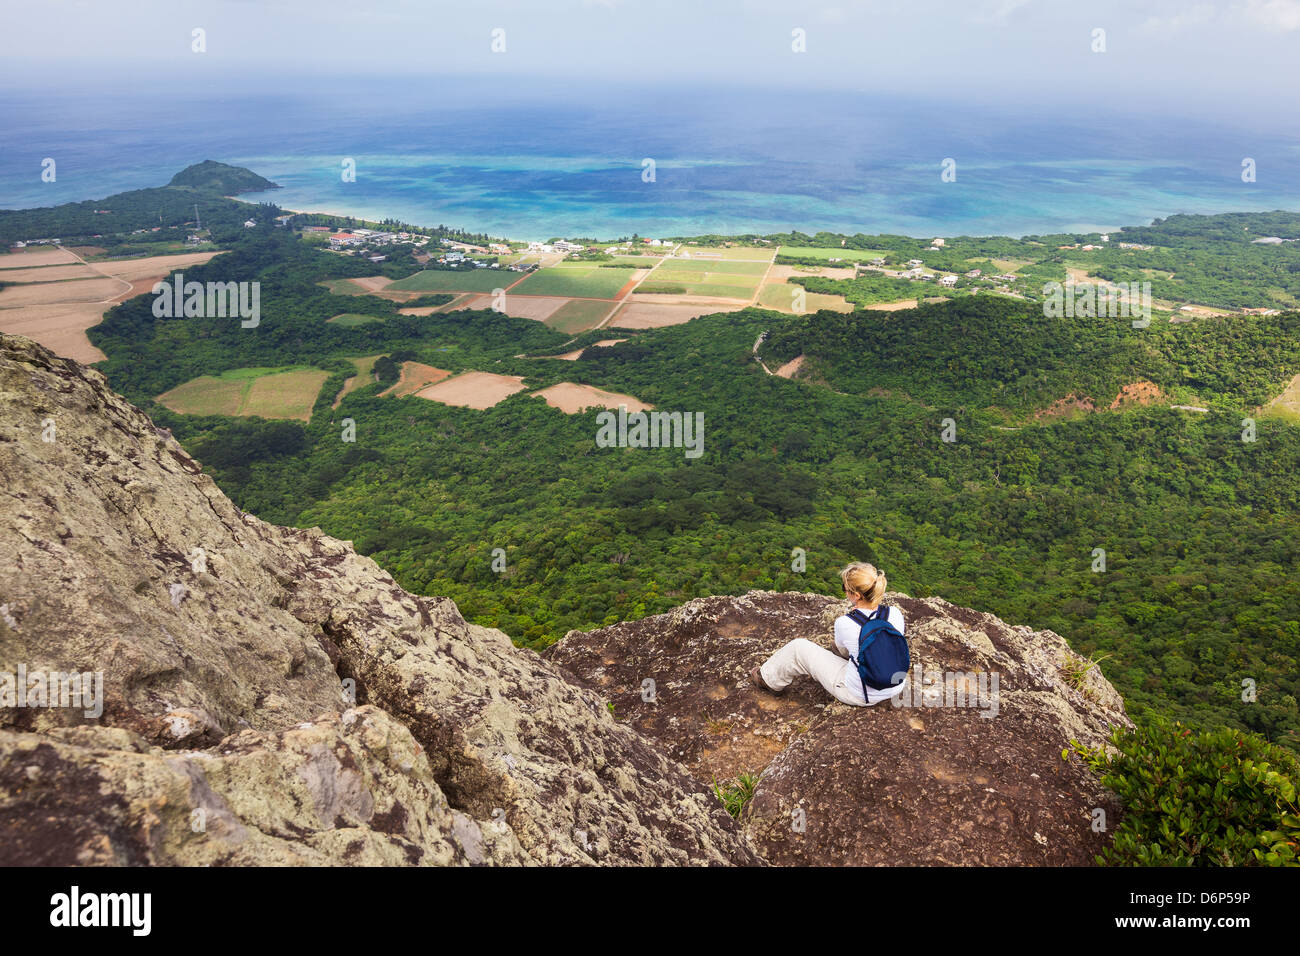 Una mujer sentada y admira la vista costera desde la cima del monte Nosoko en Ishigaki, Okinawa, Japón Foto de stock